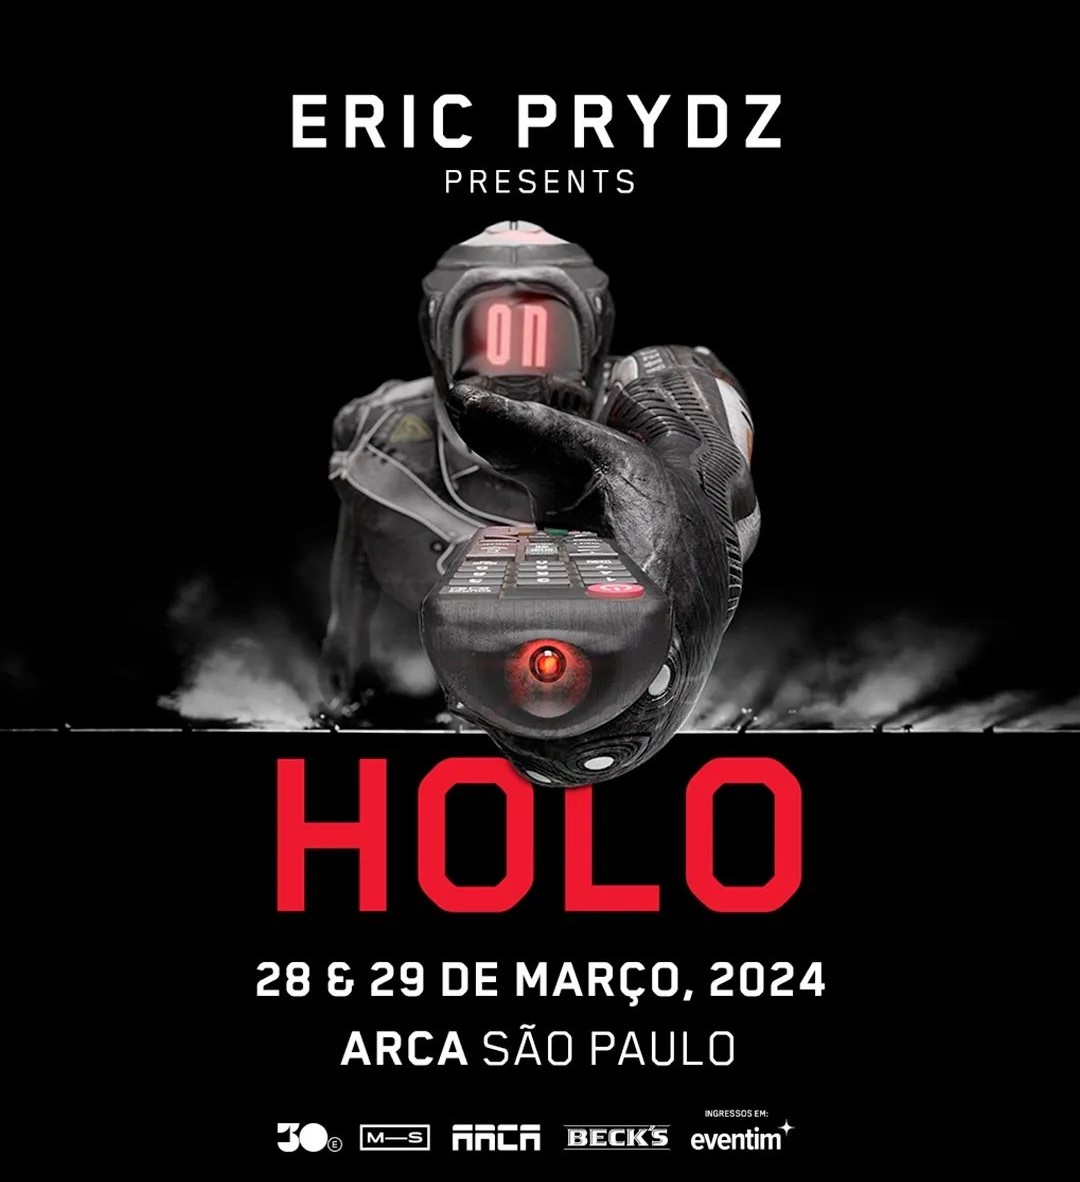 ARCA | Eric Prydz presents Holo